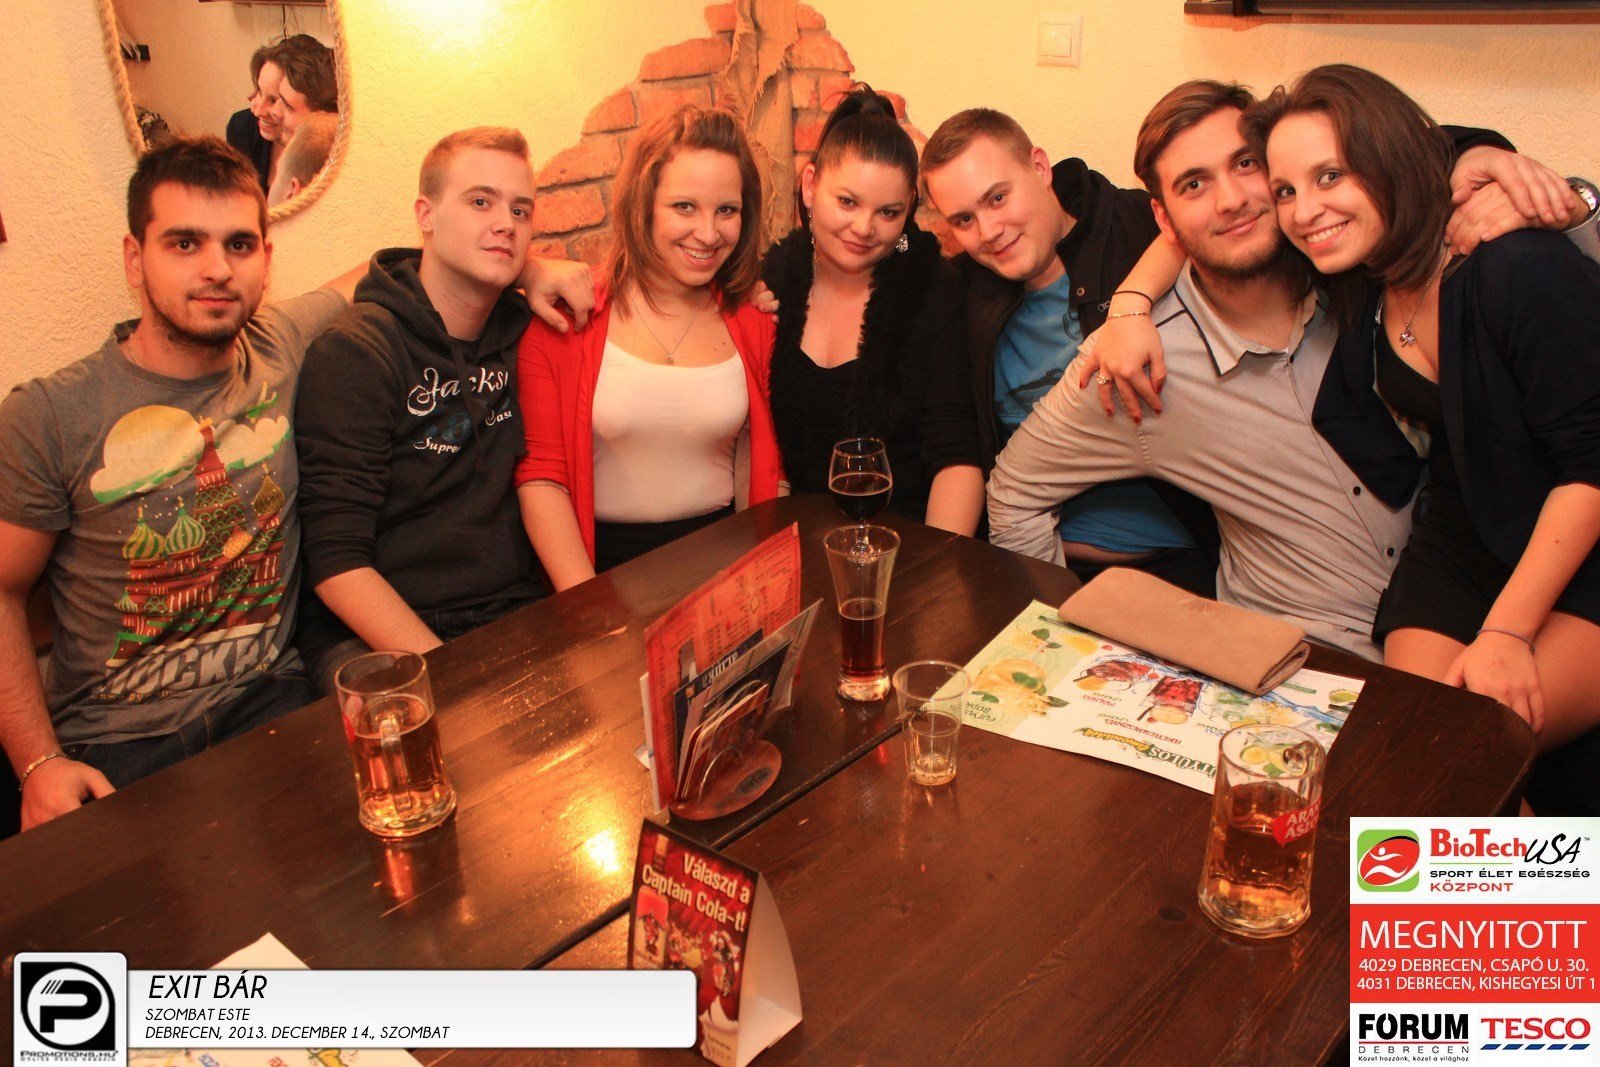 Debrecen, Exit Bar- 2013. December 14., szombat este